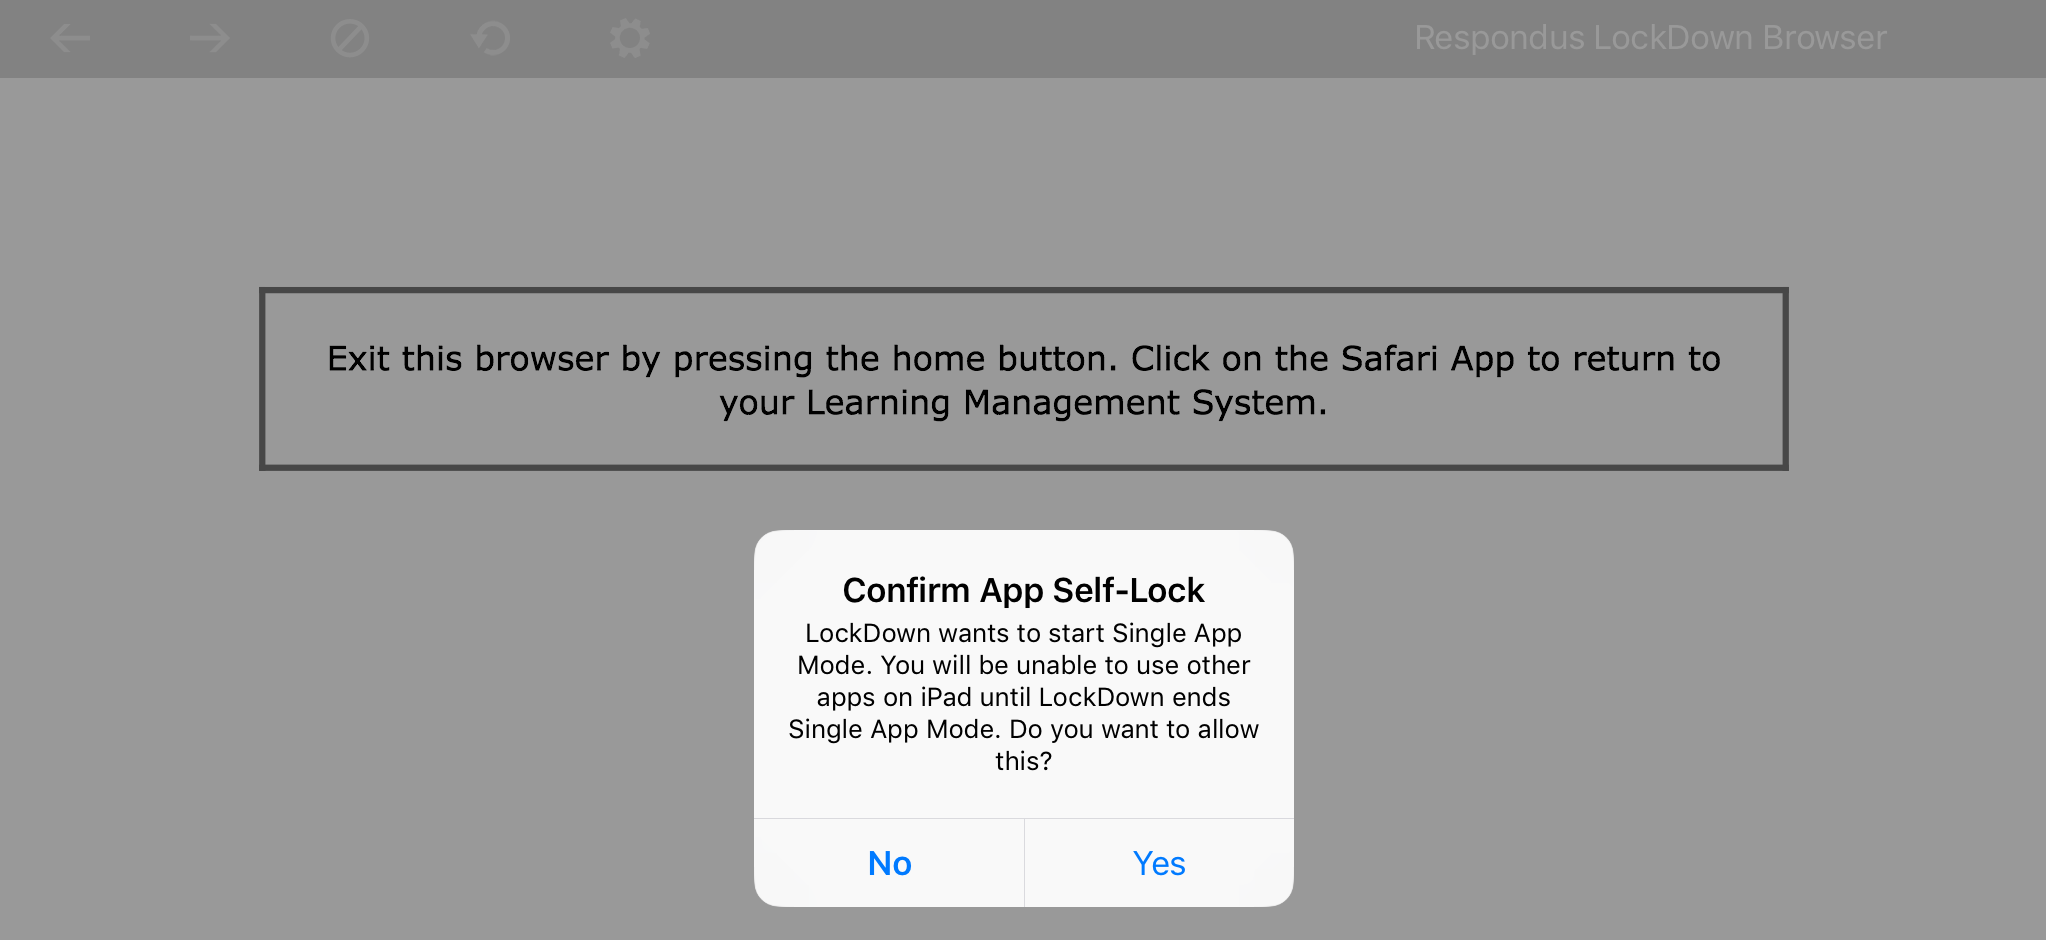 Confirm_App_Self-Lock.PNG